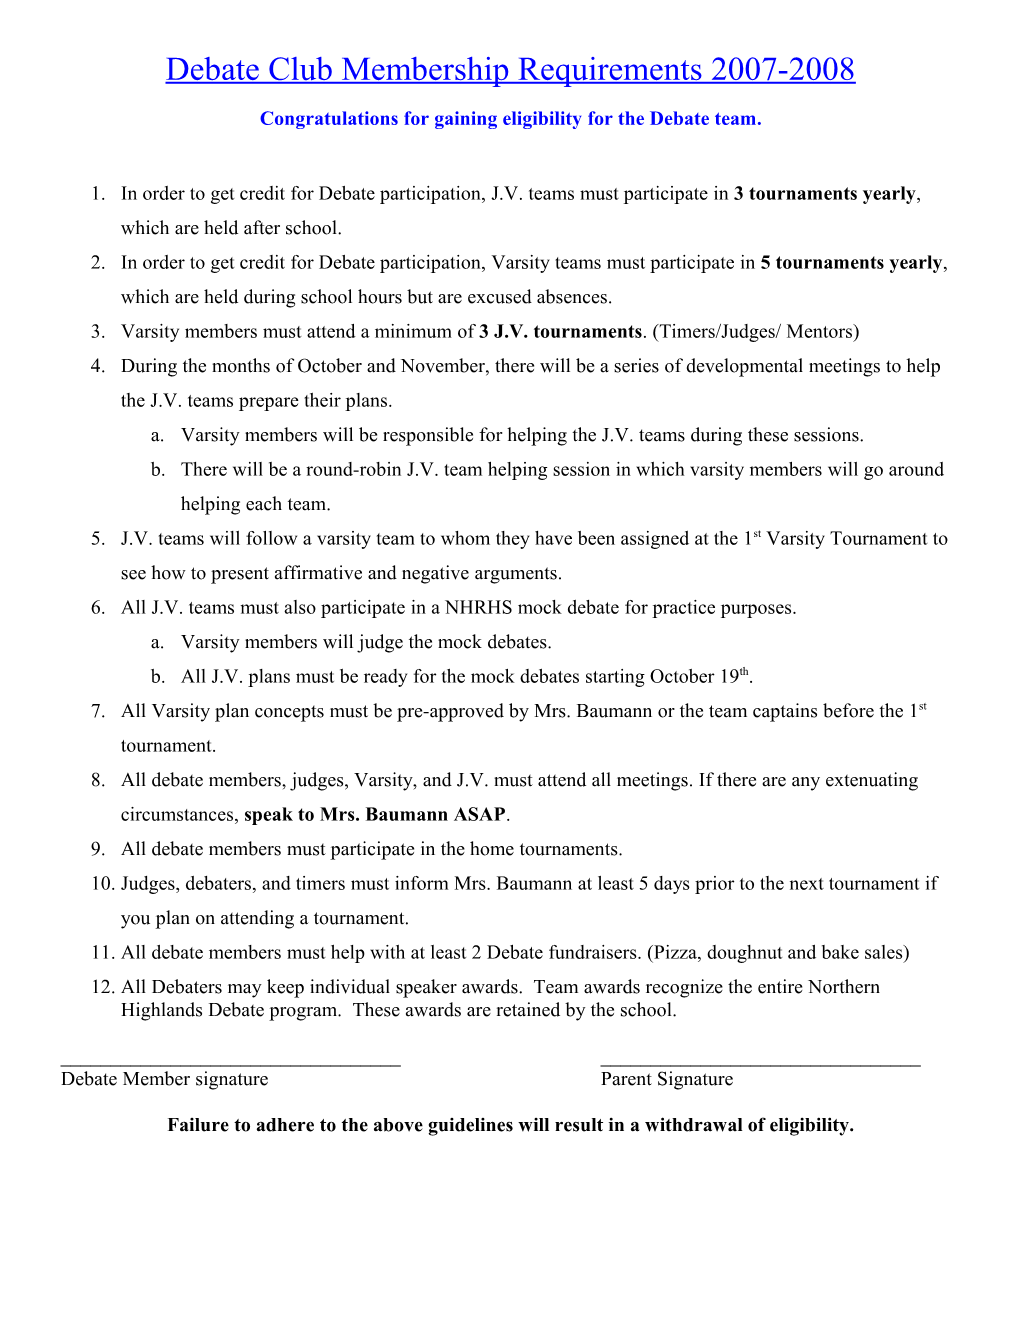 Debate Club Membership Requirements 2001-2002